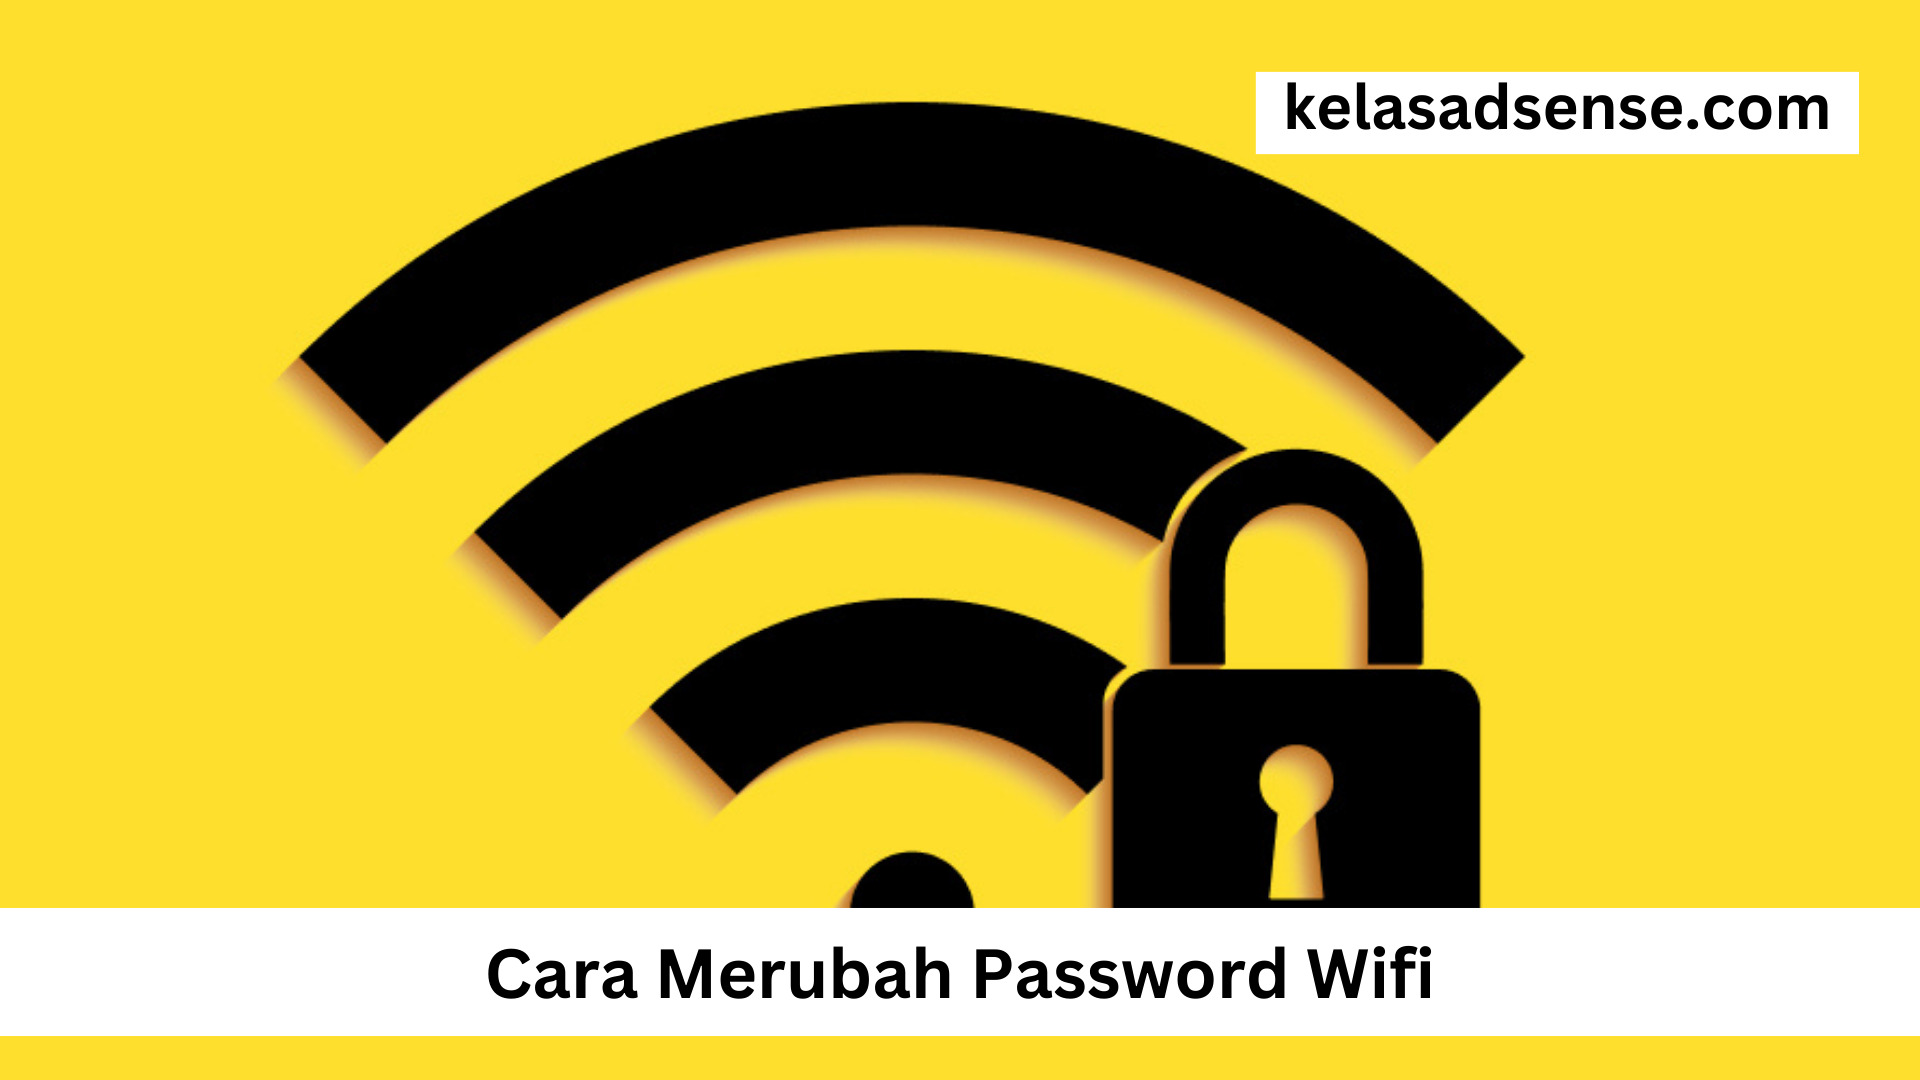 Cara Merubah Password Wifi